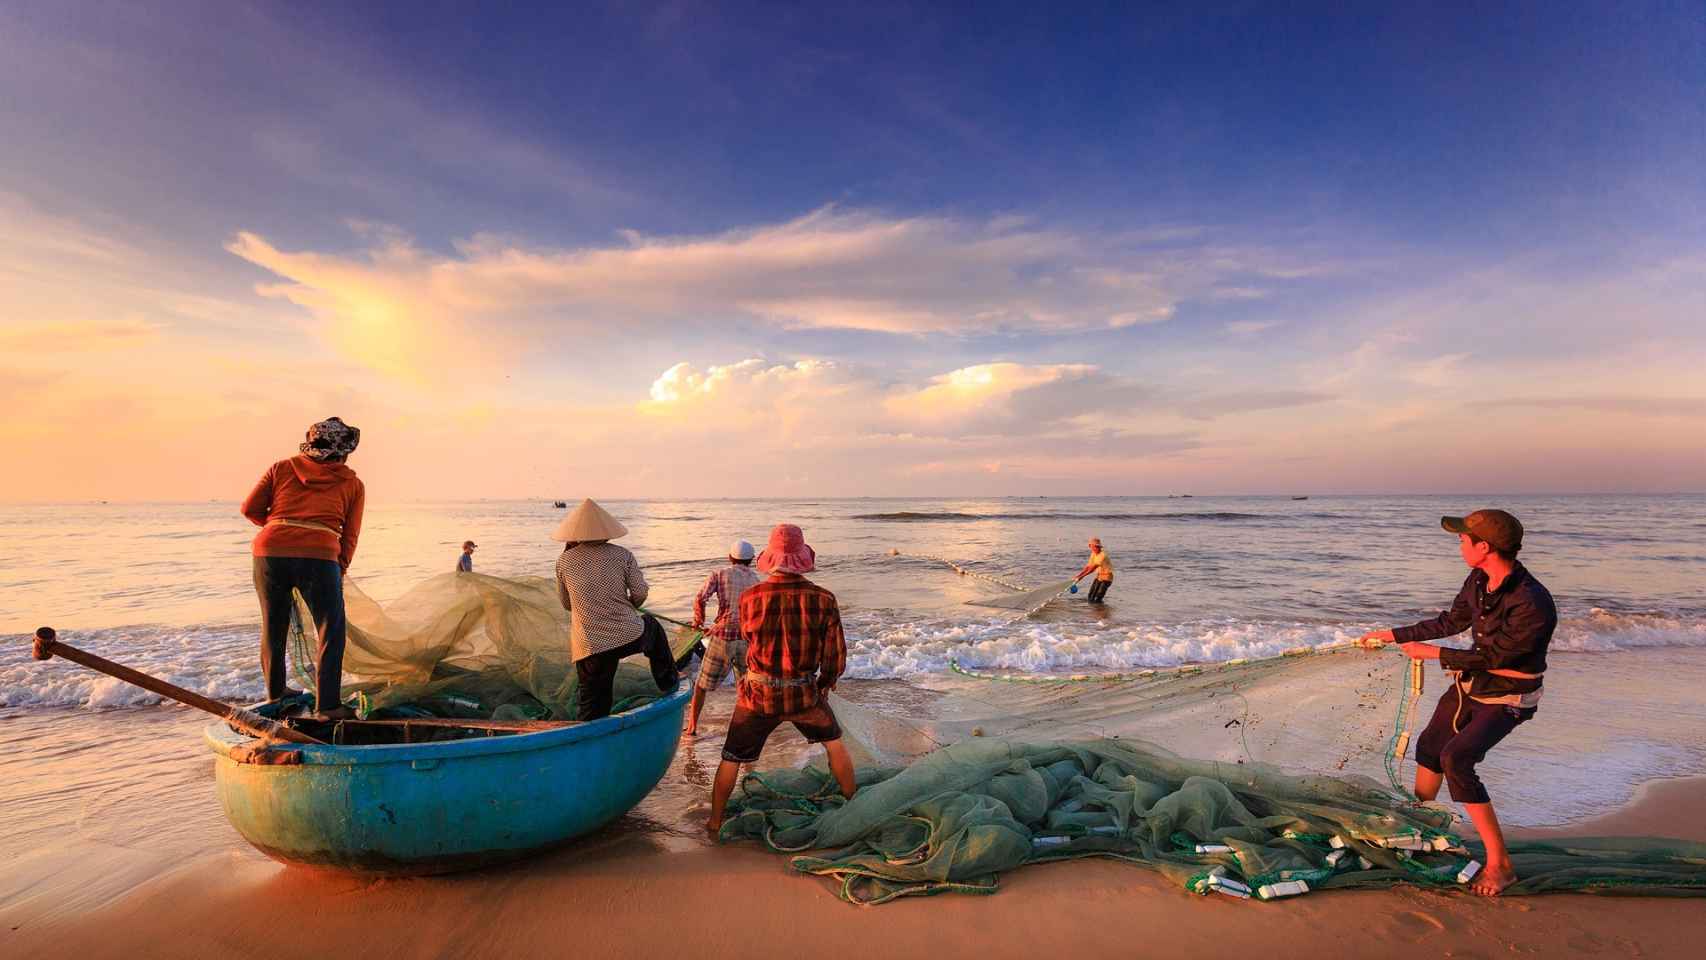 La pesca de bajura es uno de los métodos para obtener alimentos que menos daño hacen al medioambiente